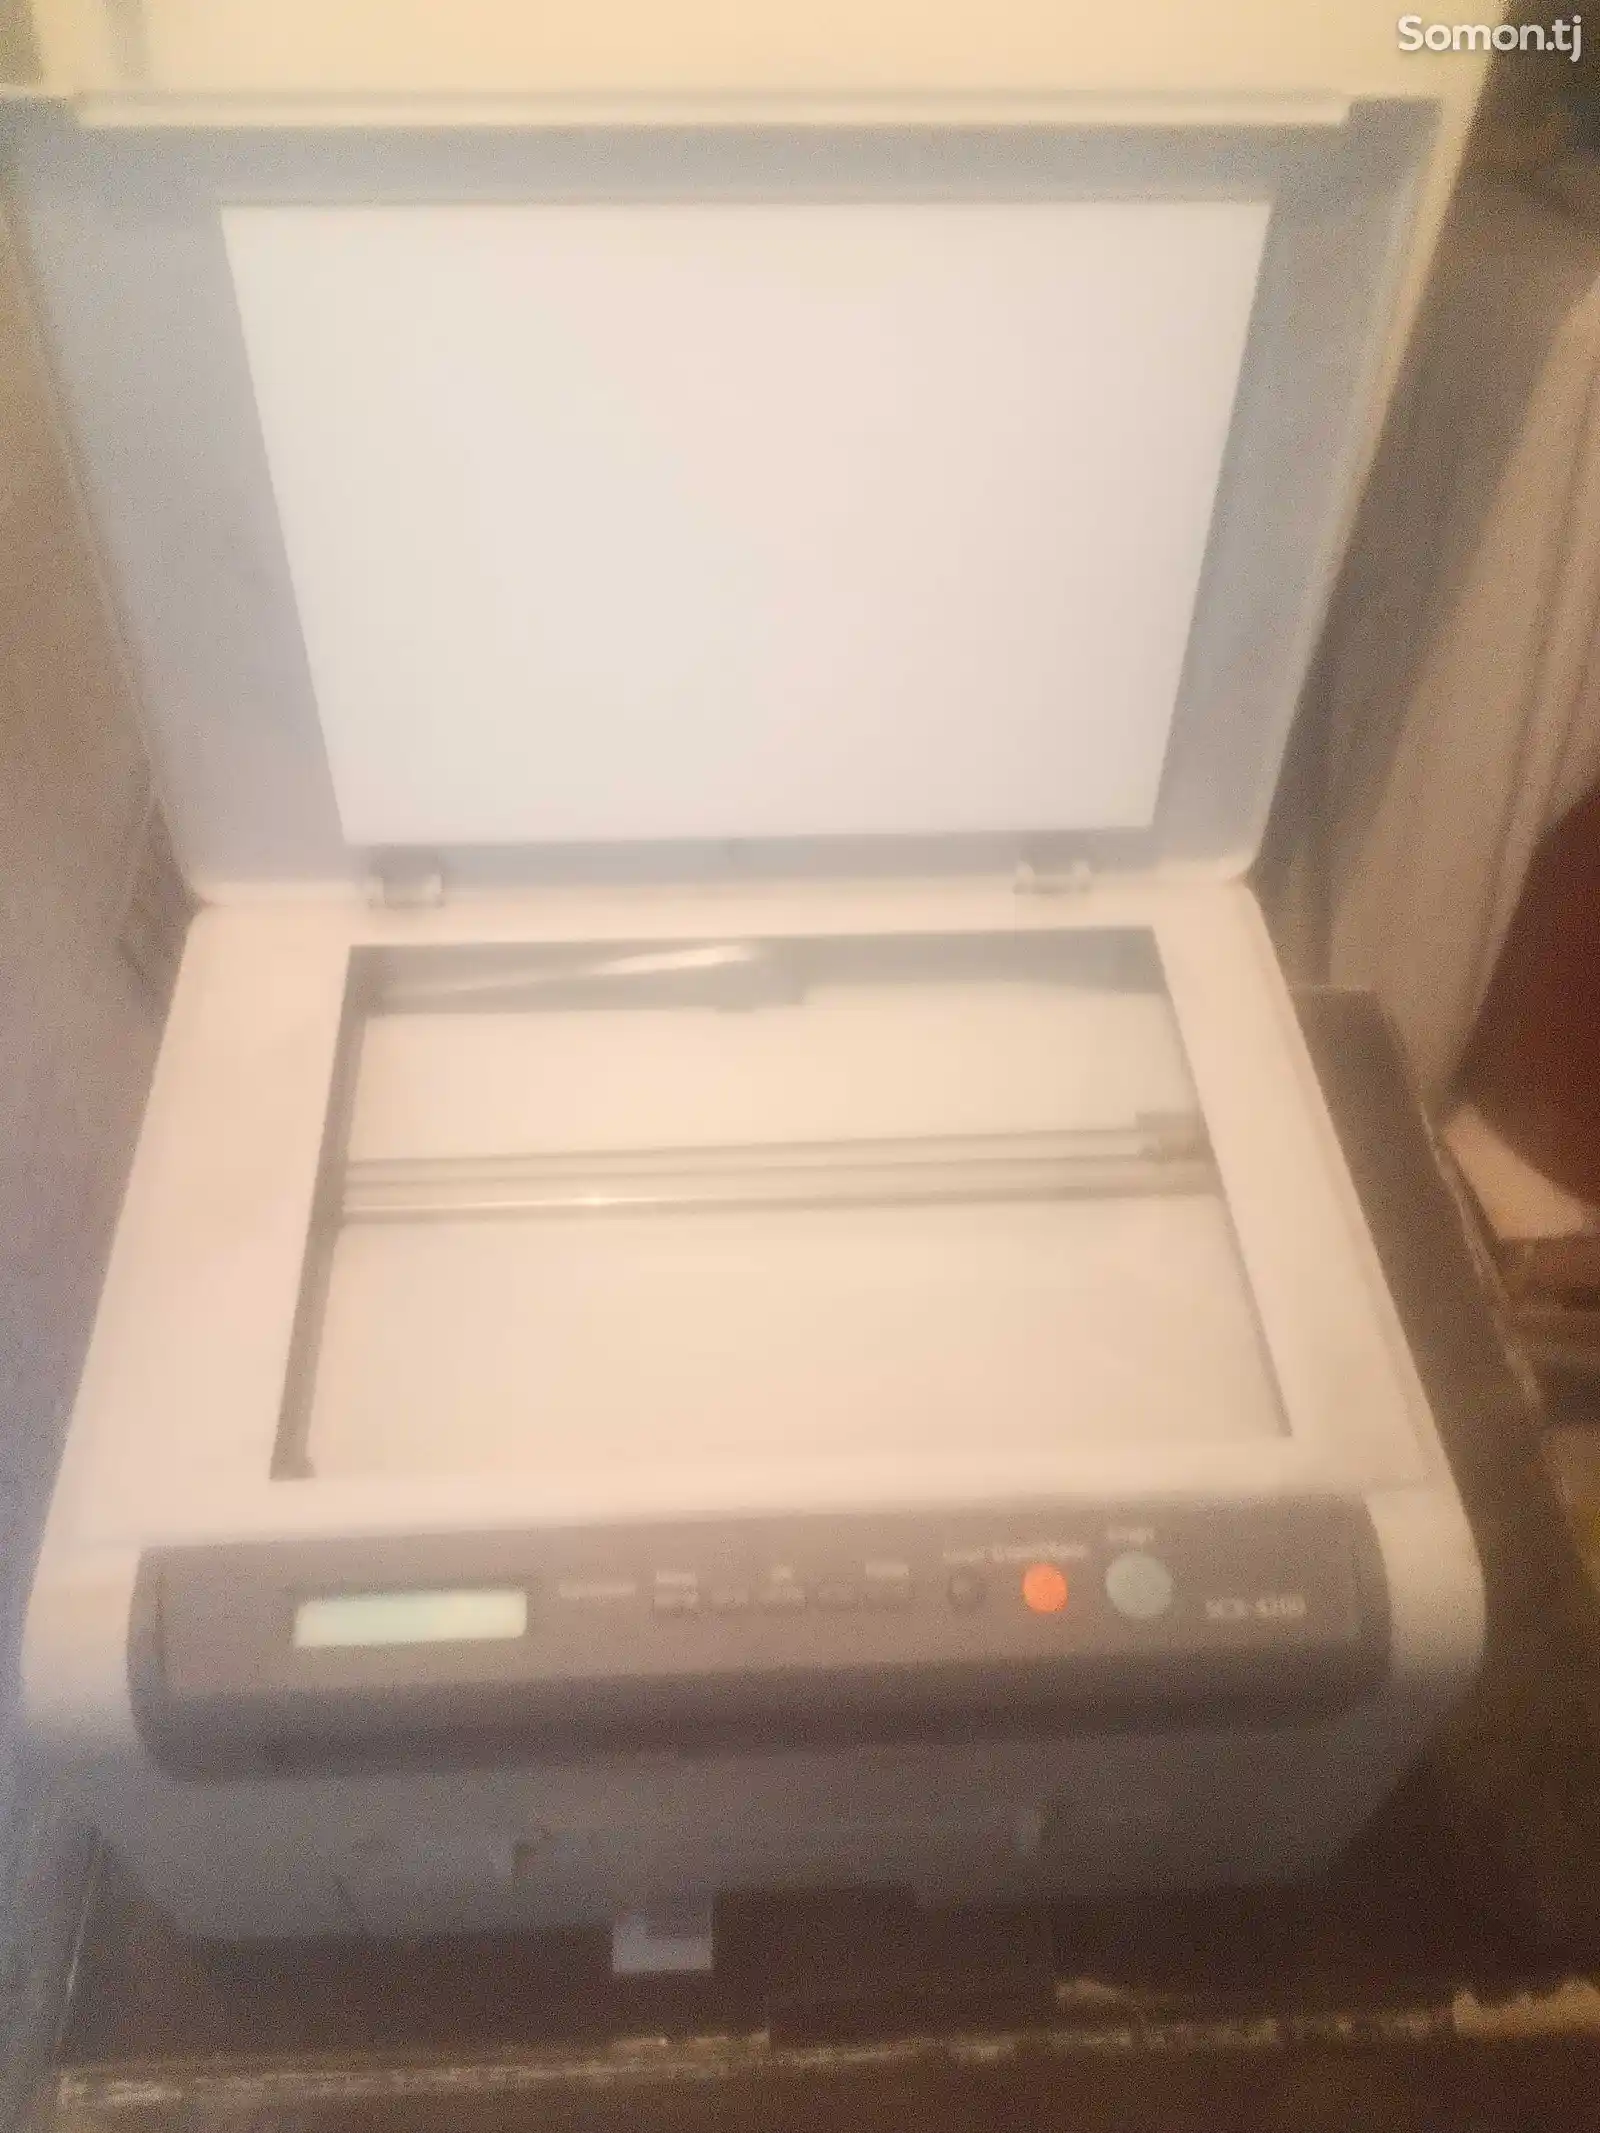 Принтер Samsung-1